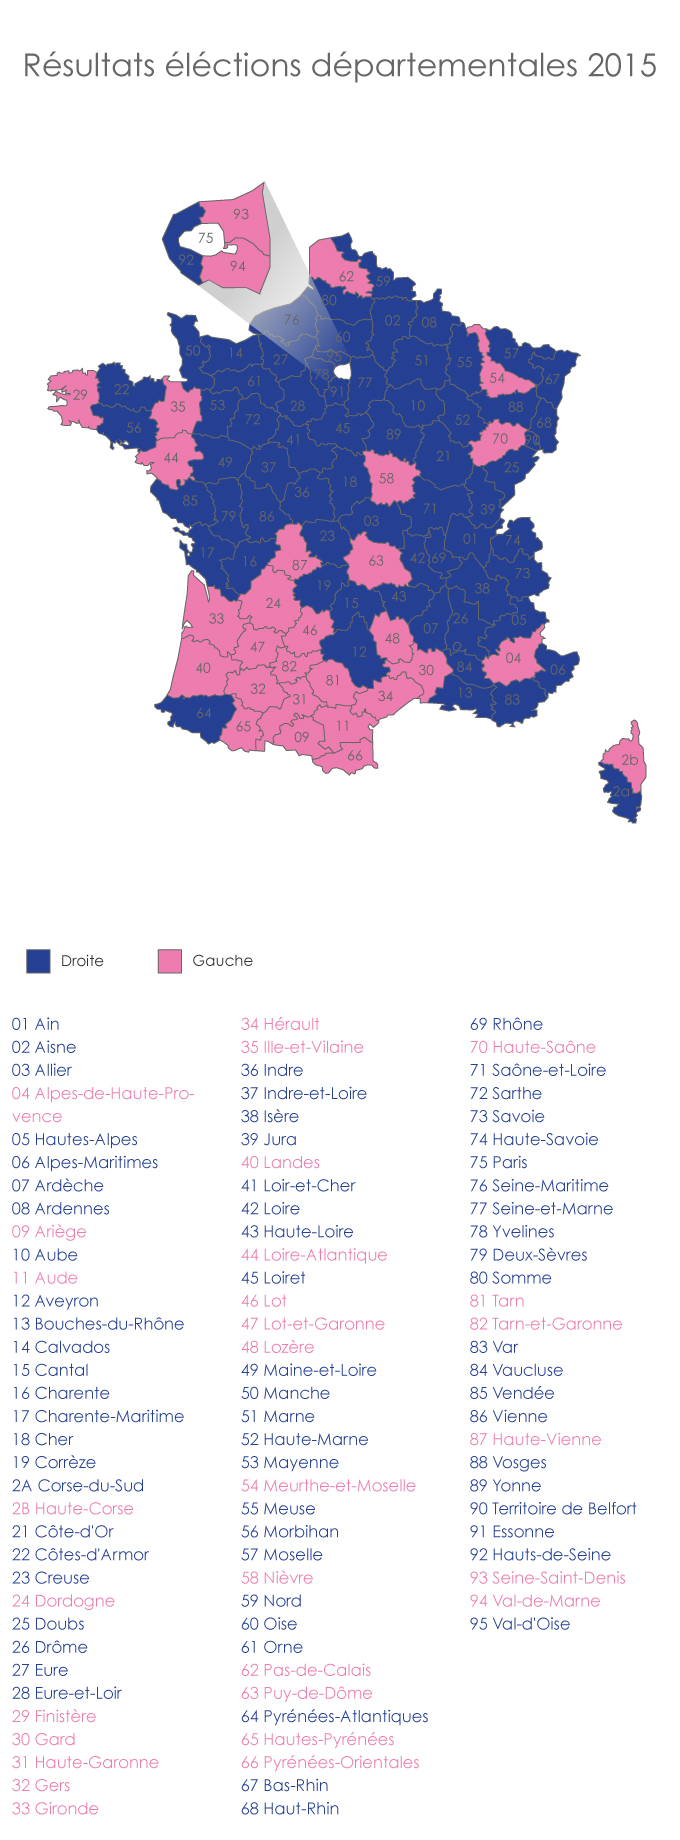 Résultats des éléctions départementales 2015